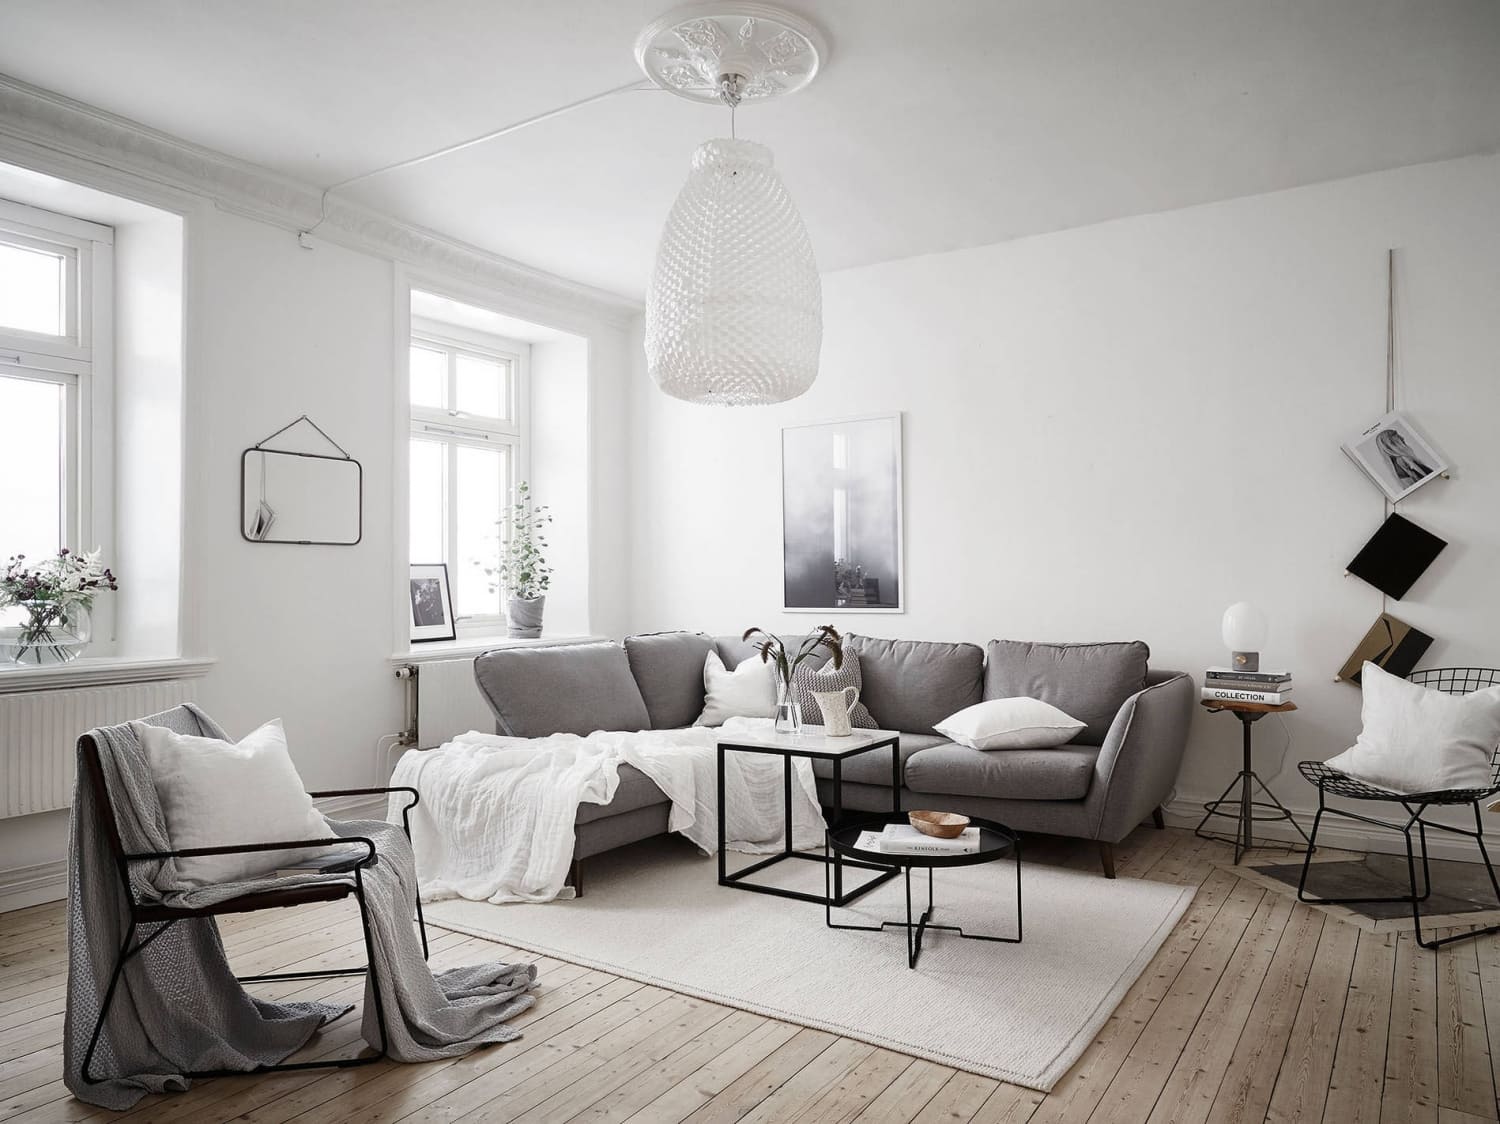 Thiết kế phòng khách Scandinavian đơn giản mà tinh tế